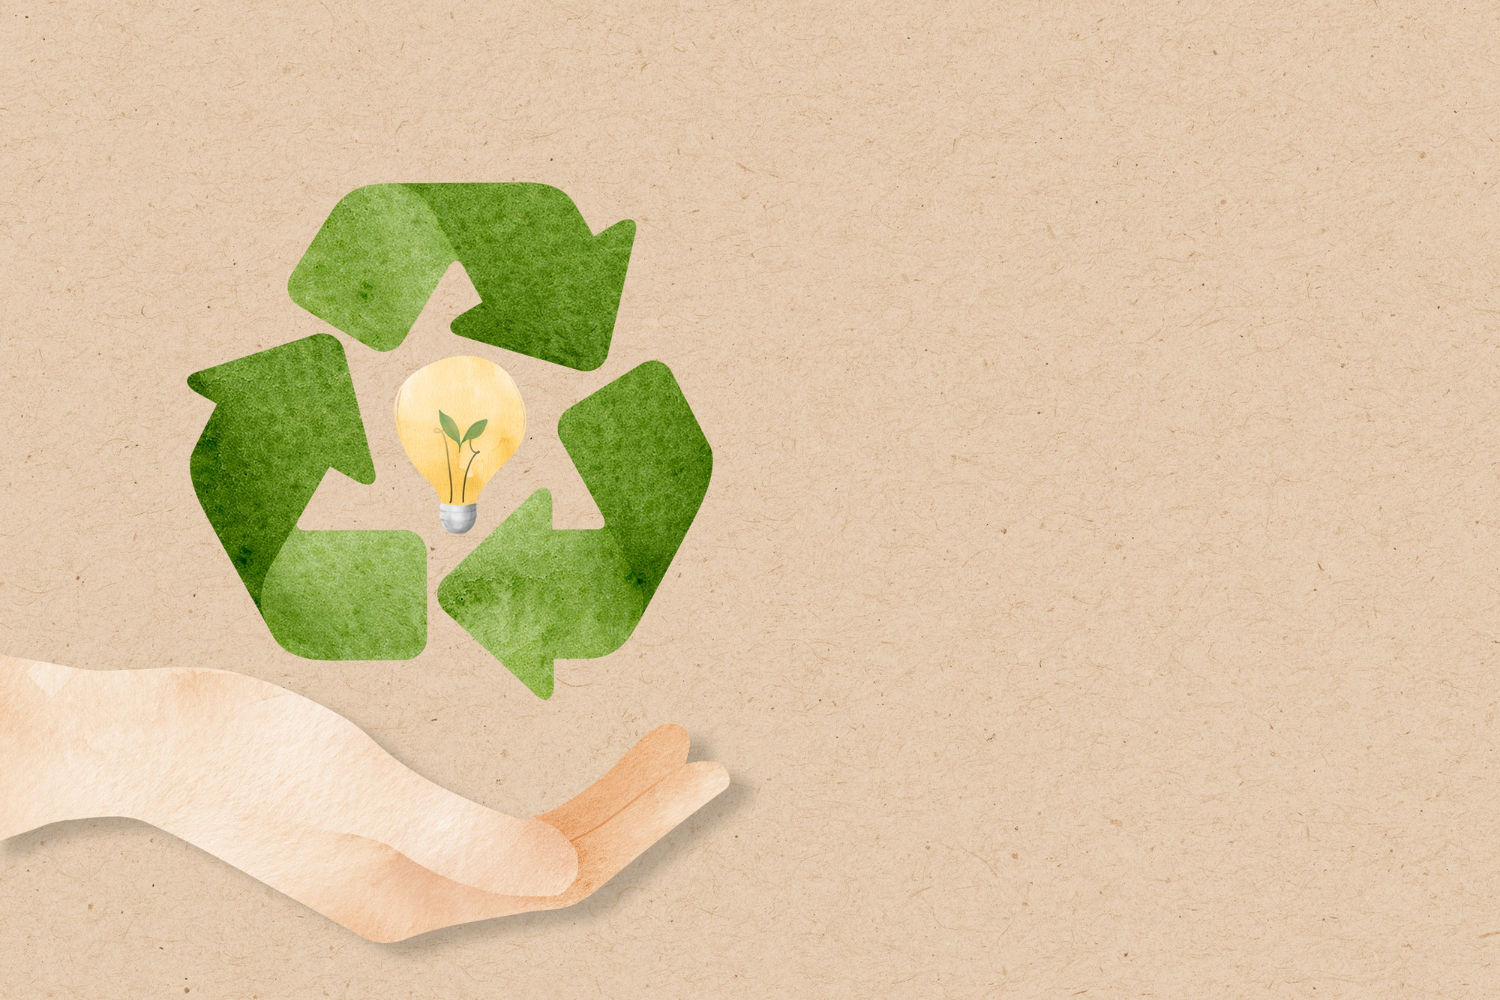 Iniciativa busca reciclar e reutilizar materiais feitos de PVC